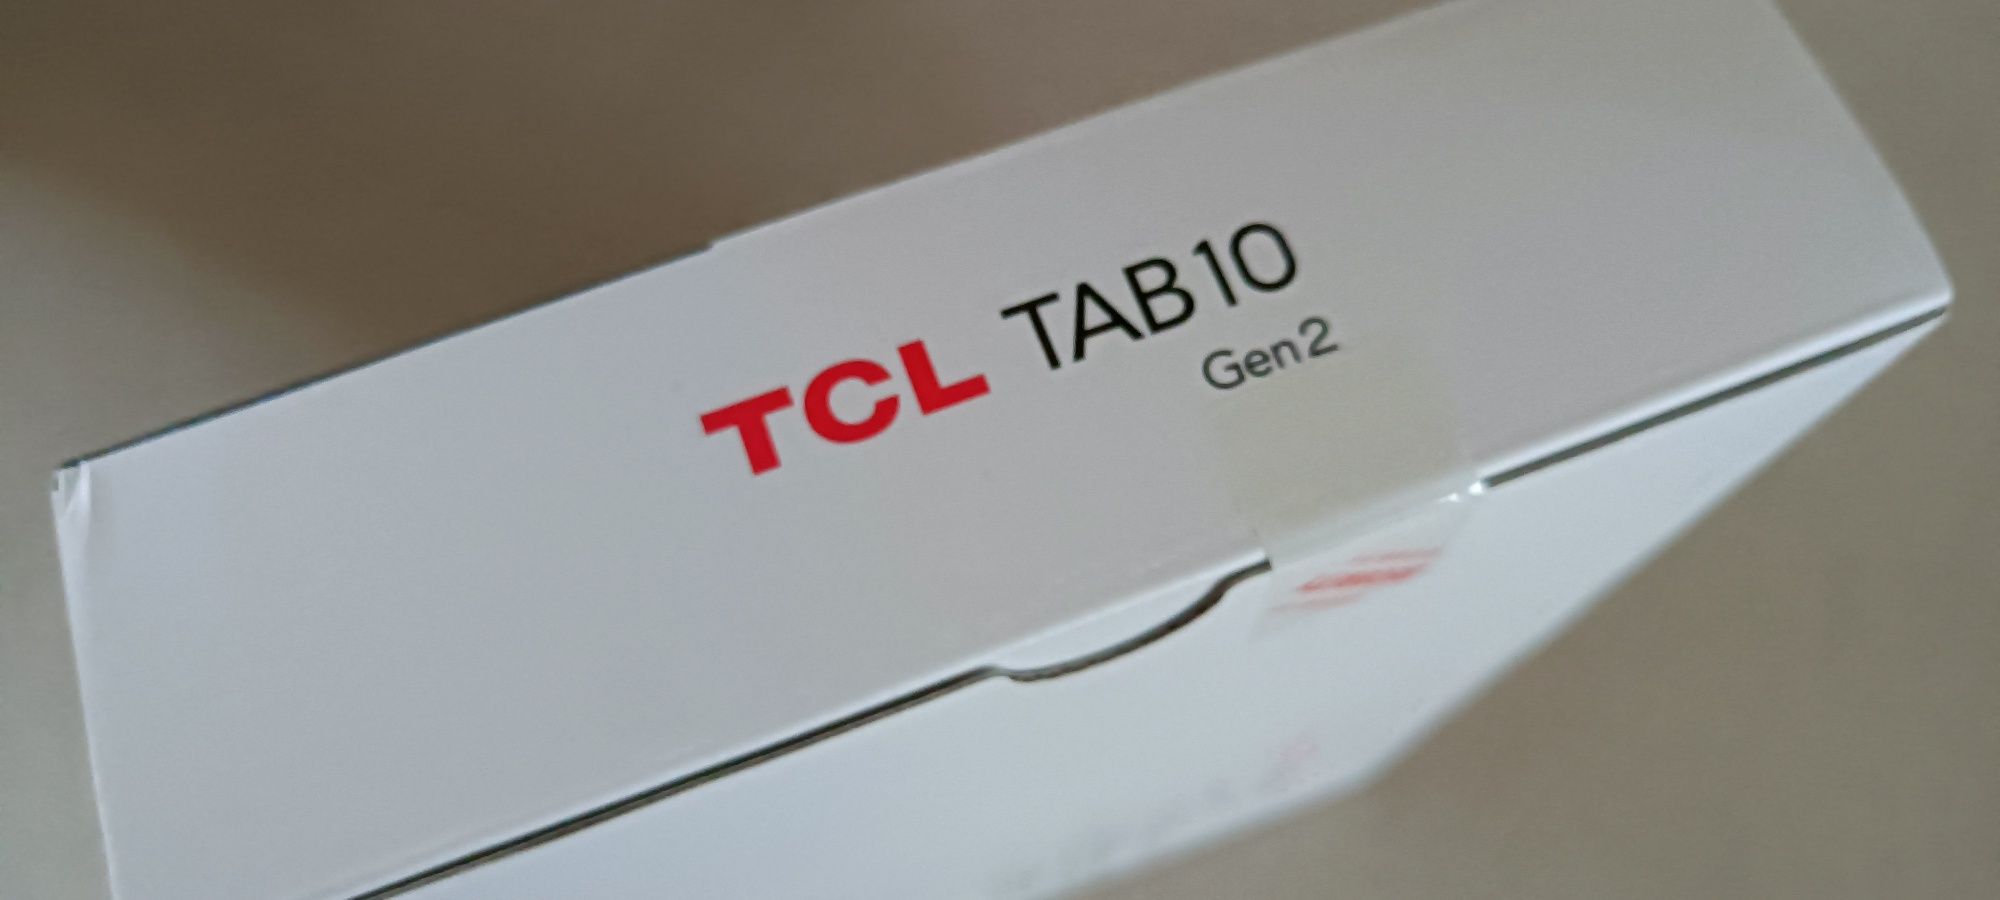 Tablet TCL TAB 10 gen2 nowy